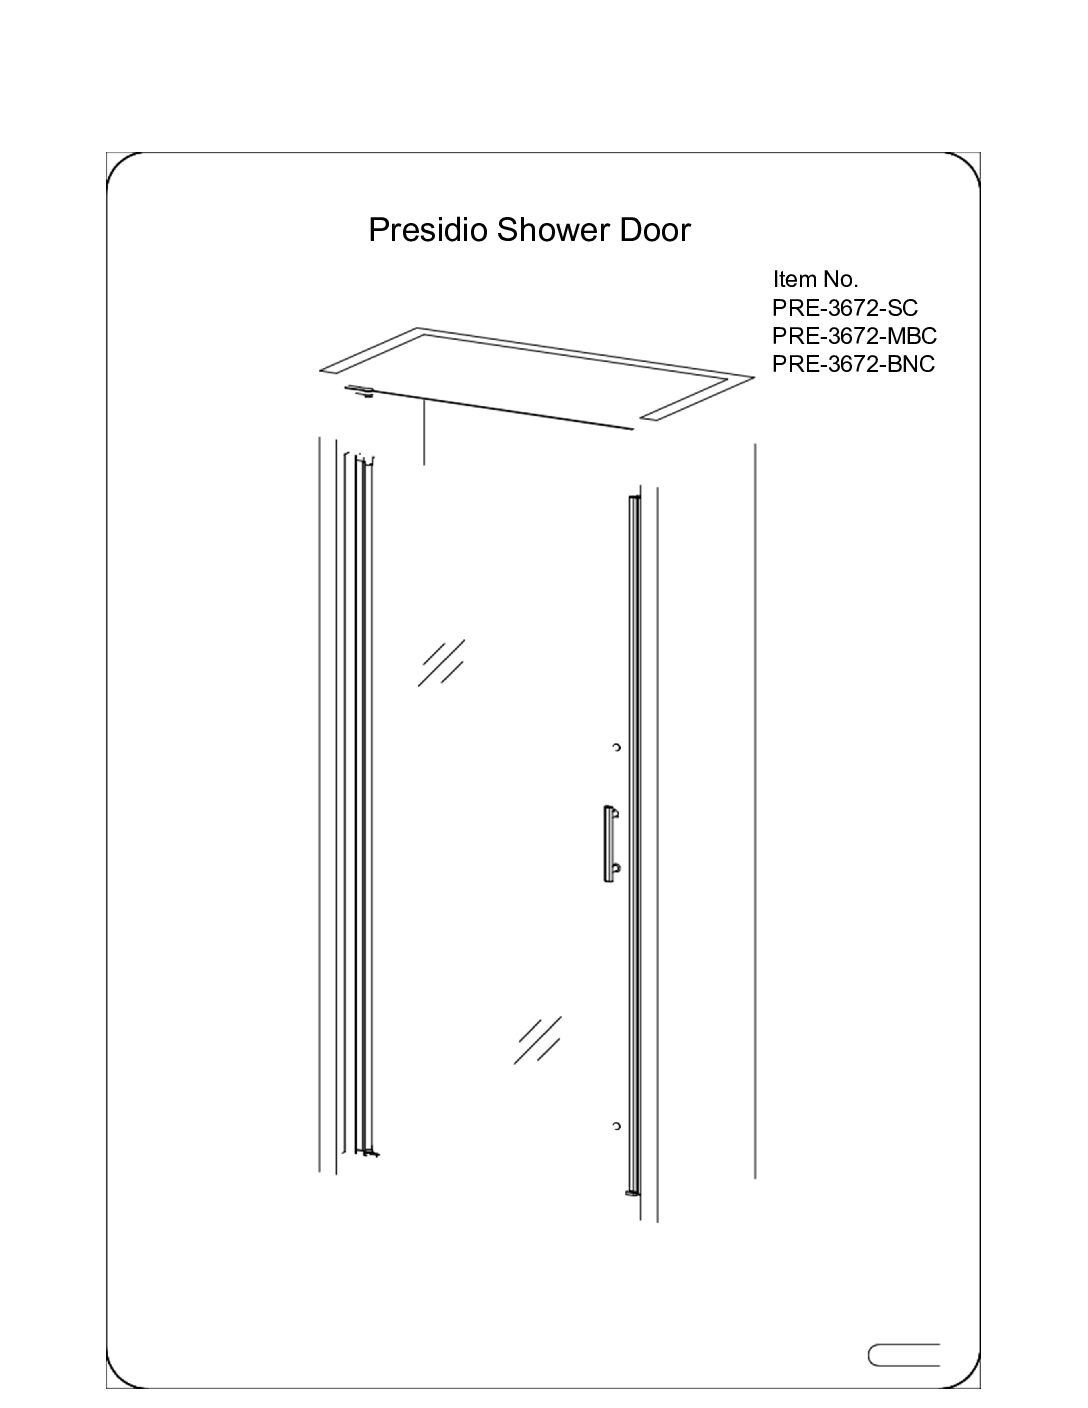 Rainier Deluxe Tub Shower Door Installation